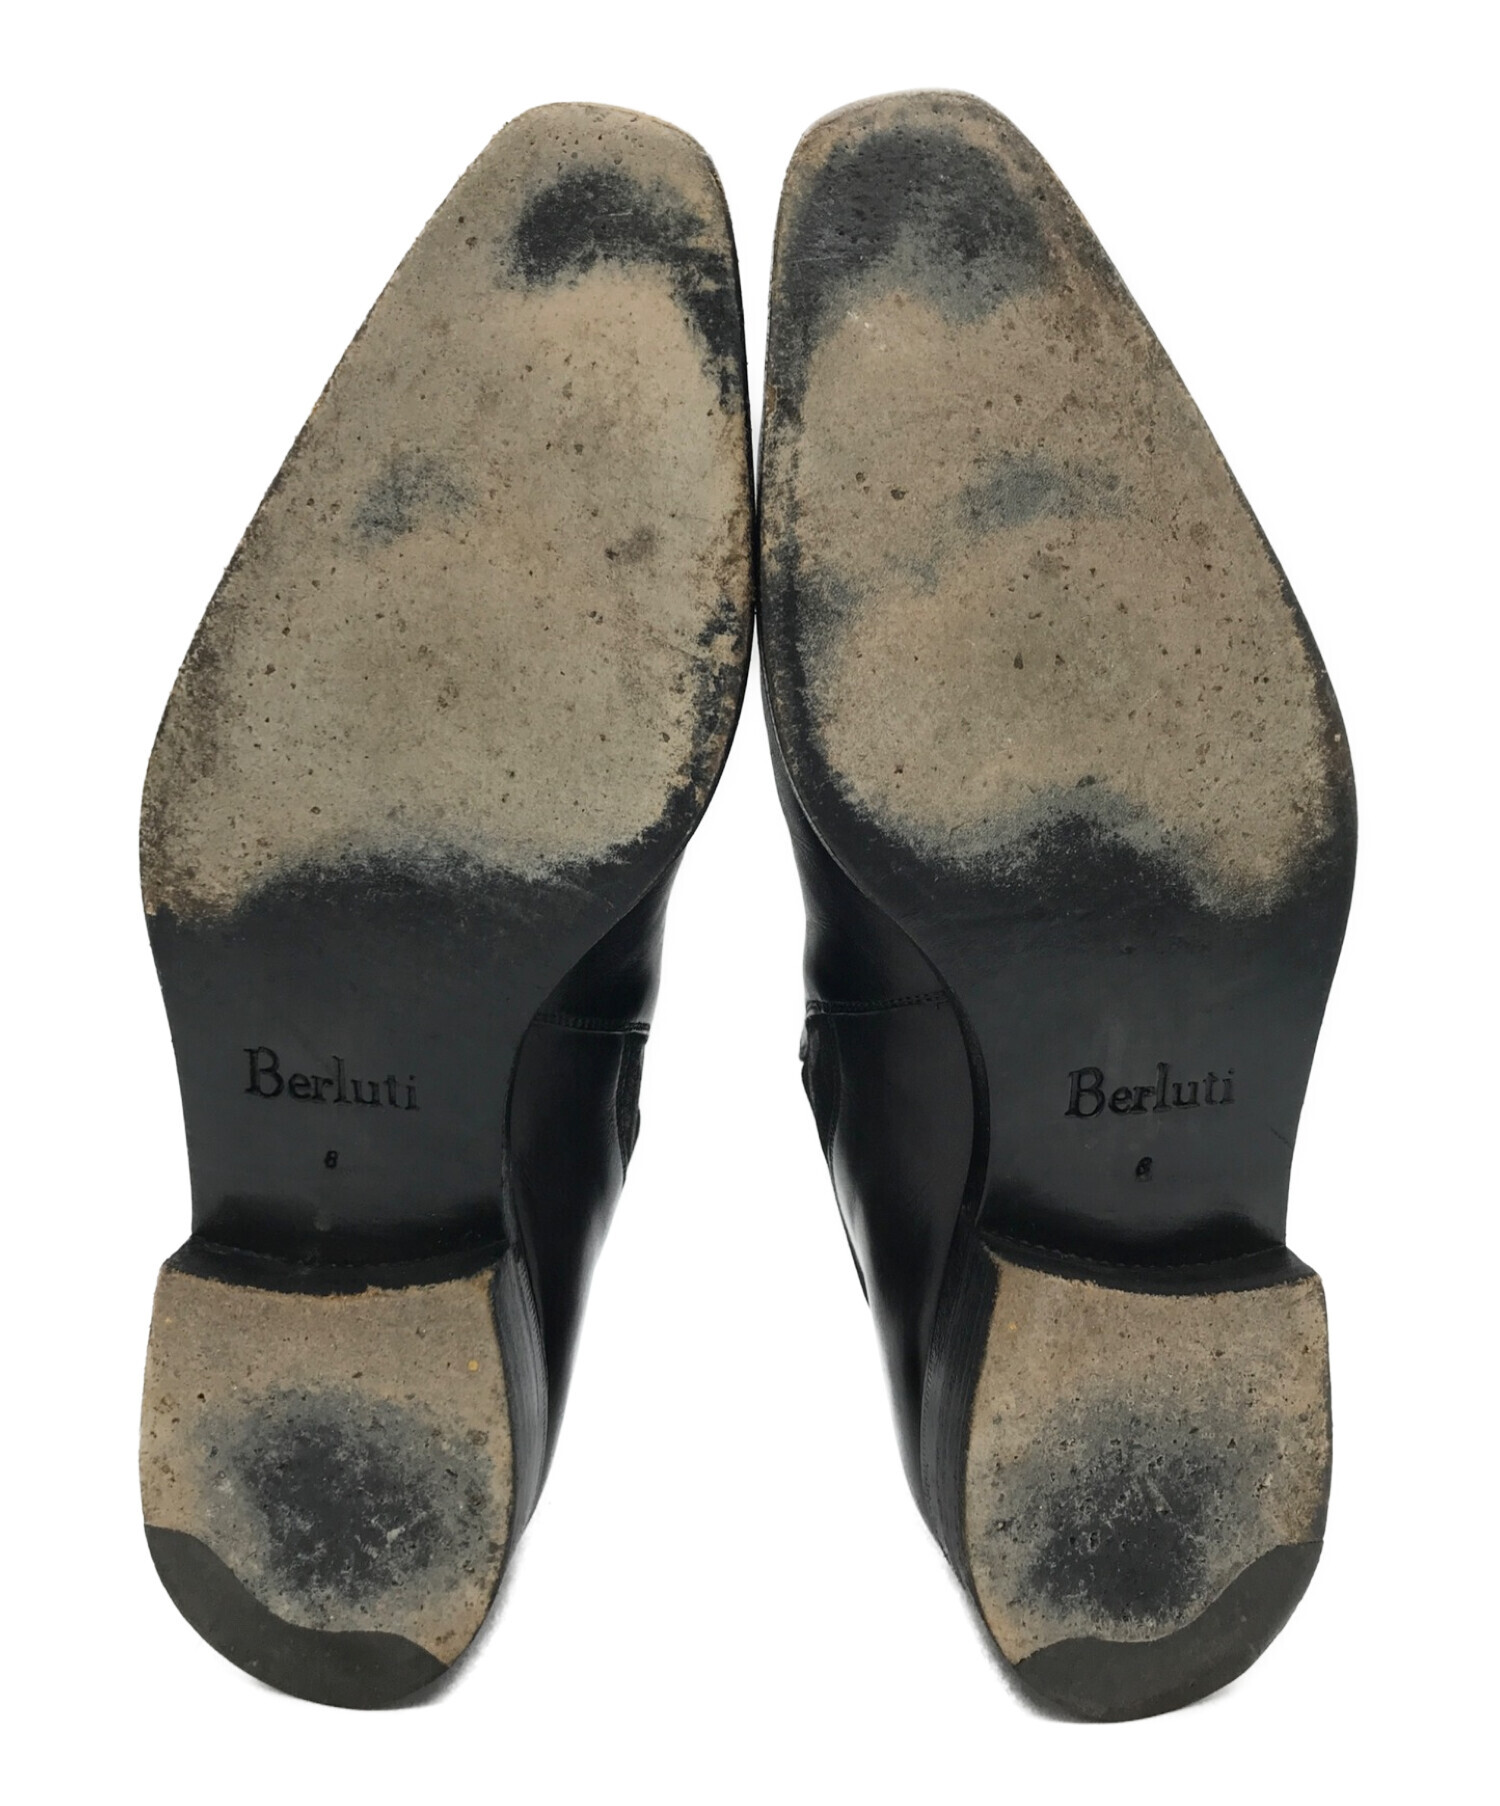 Berluti (ベルルッティ) サイドゴアショートブーツ ブラック サイズ:8